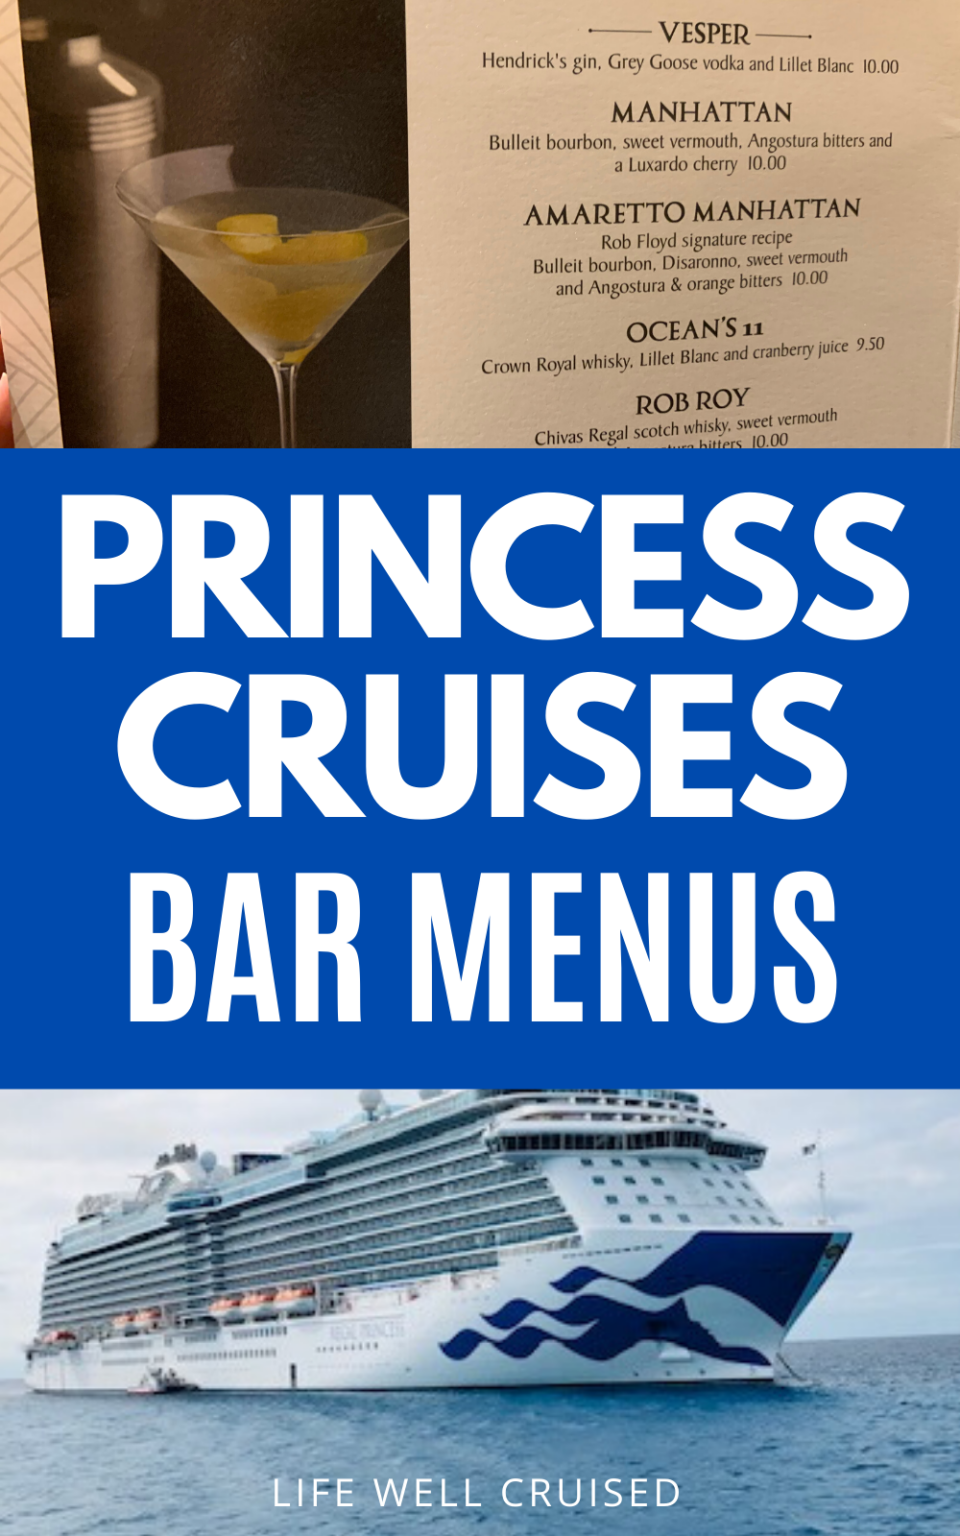 cruise ship bar names